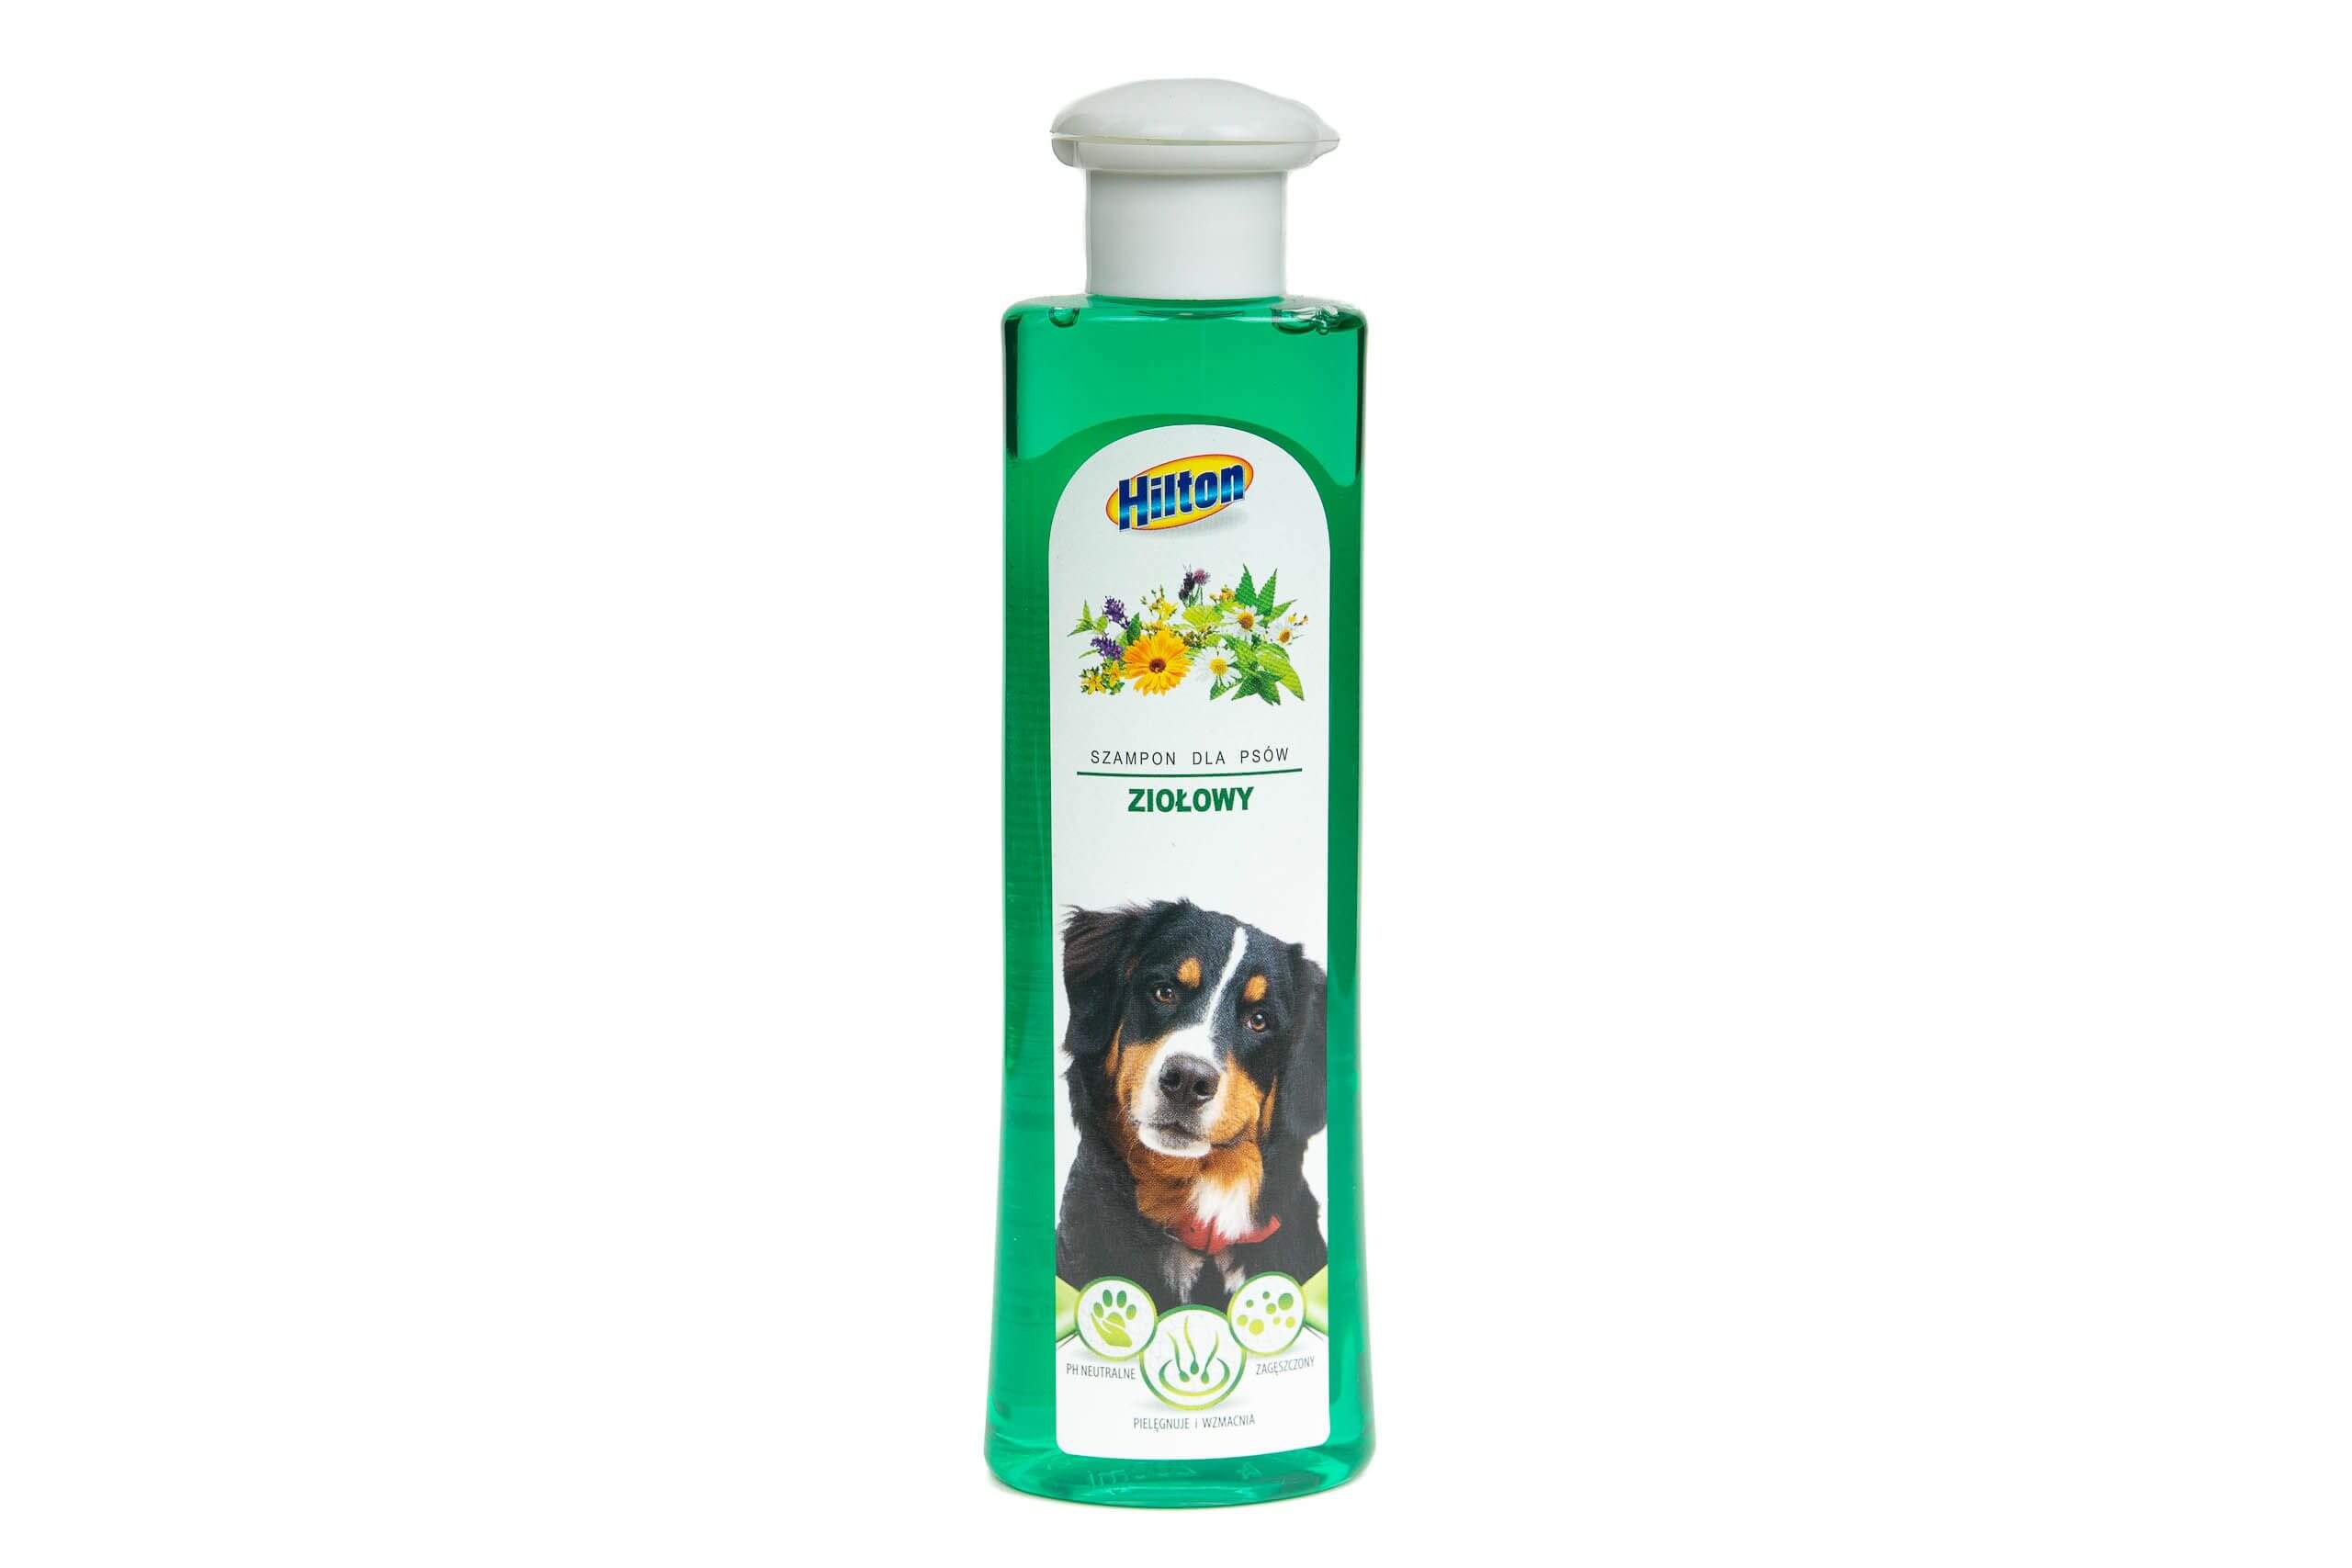 hilton szampon ziołowy dla psa dla człowieka